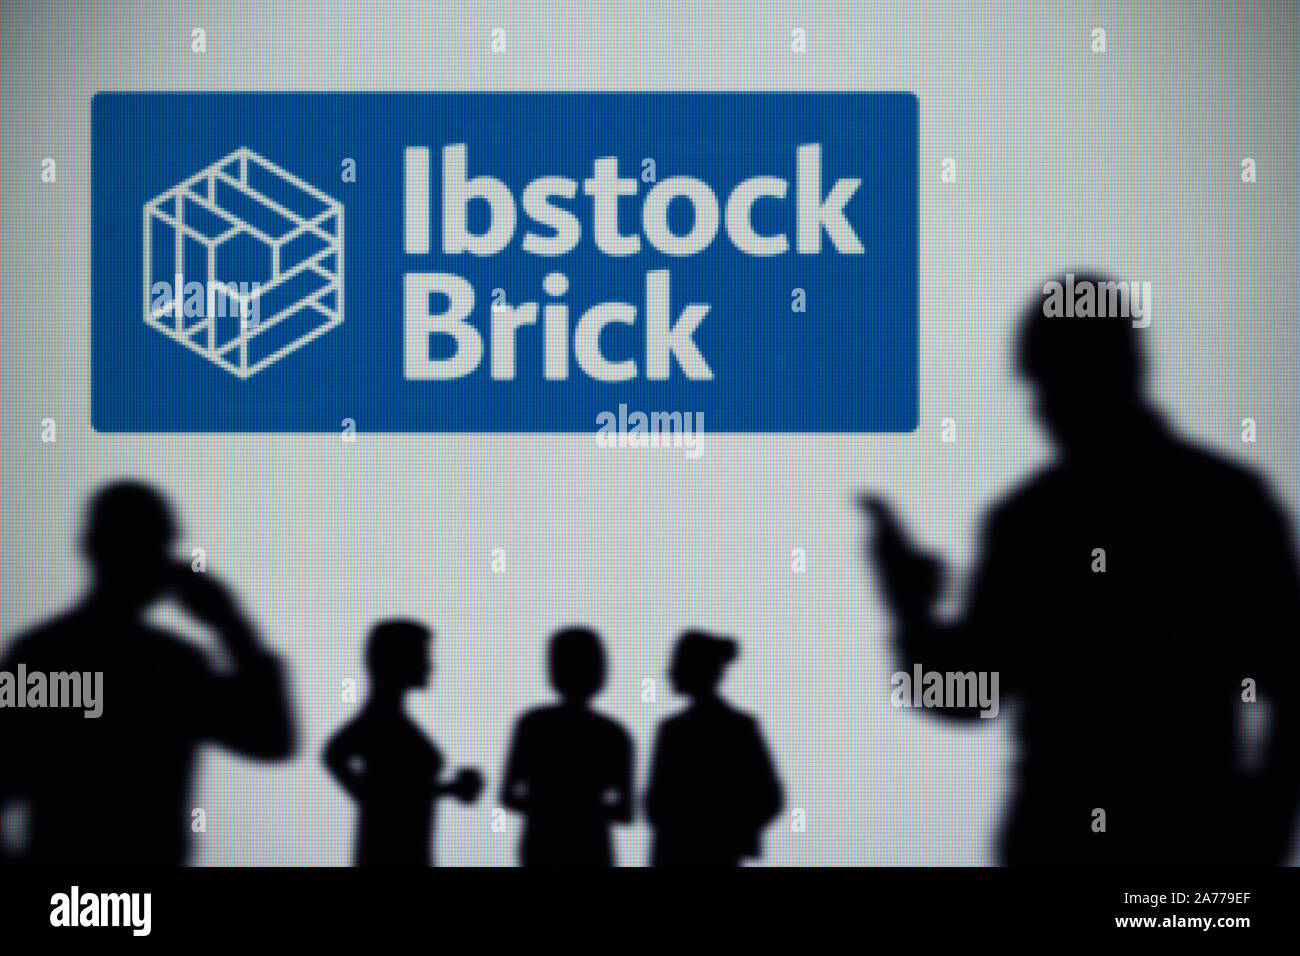 Die ibstock Brick Logo ist auf einen LED-Bildschirm im Hintergrund, während eine Silhouette Person ein Smartphone verwendet (nur redaktionelle Nutzung) Stockfoto